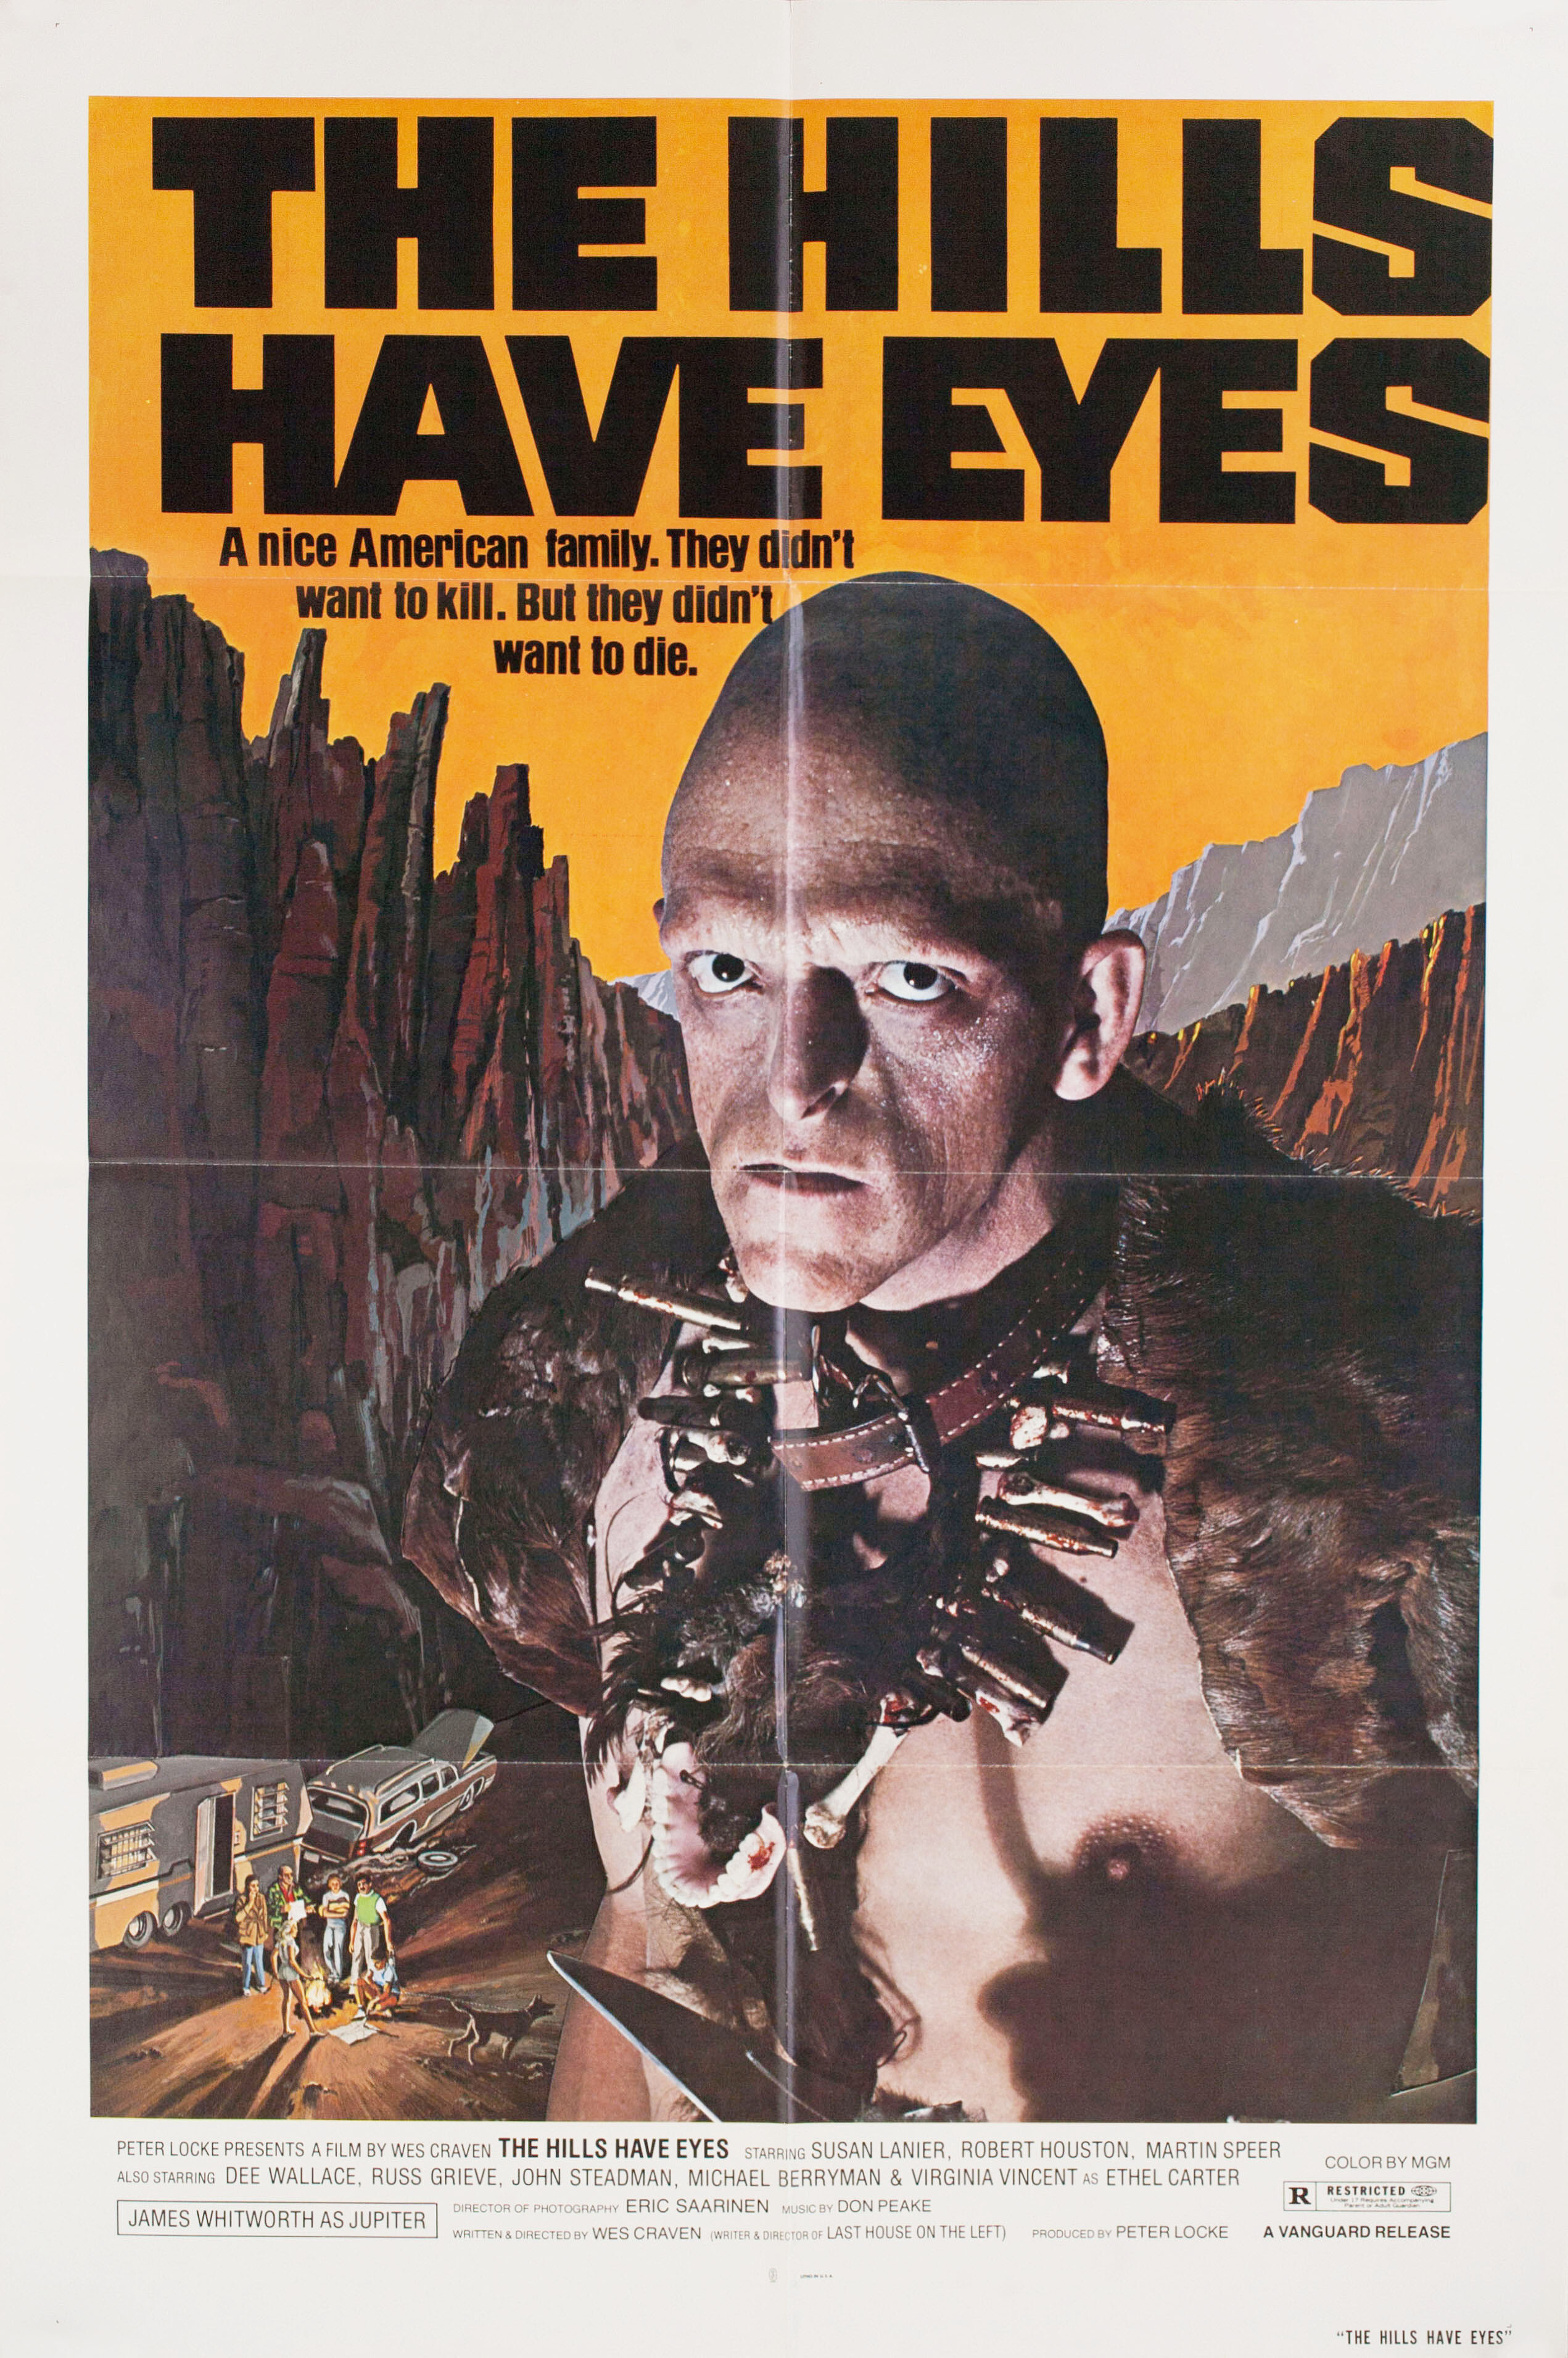 У холмов есть глаза (The Hills Have Eyes, 1977), режиссёр Уэс Крэйвен, американский постер к фильму (ужасы, 1977 год)